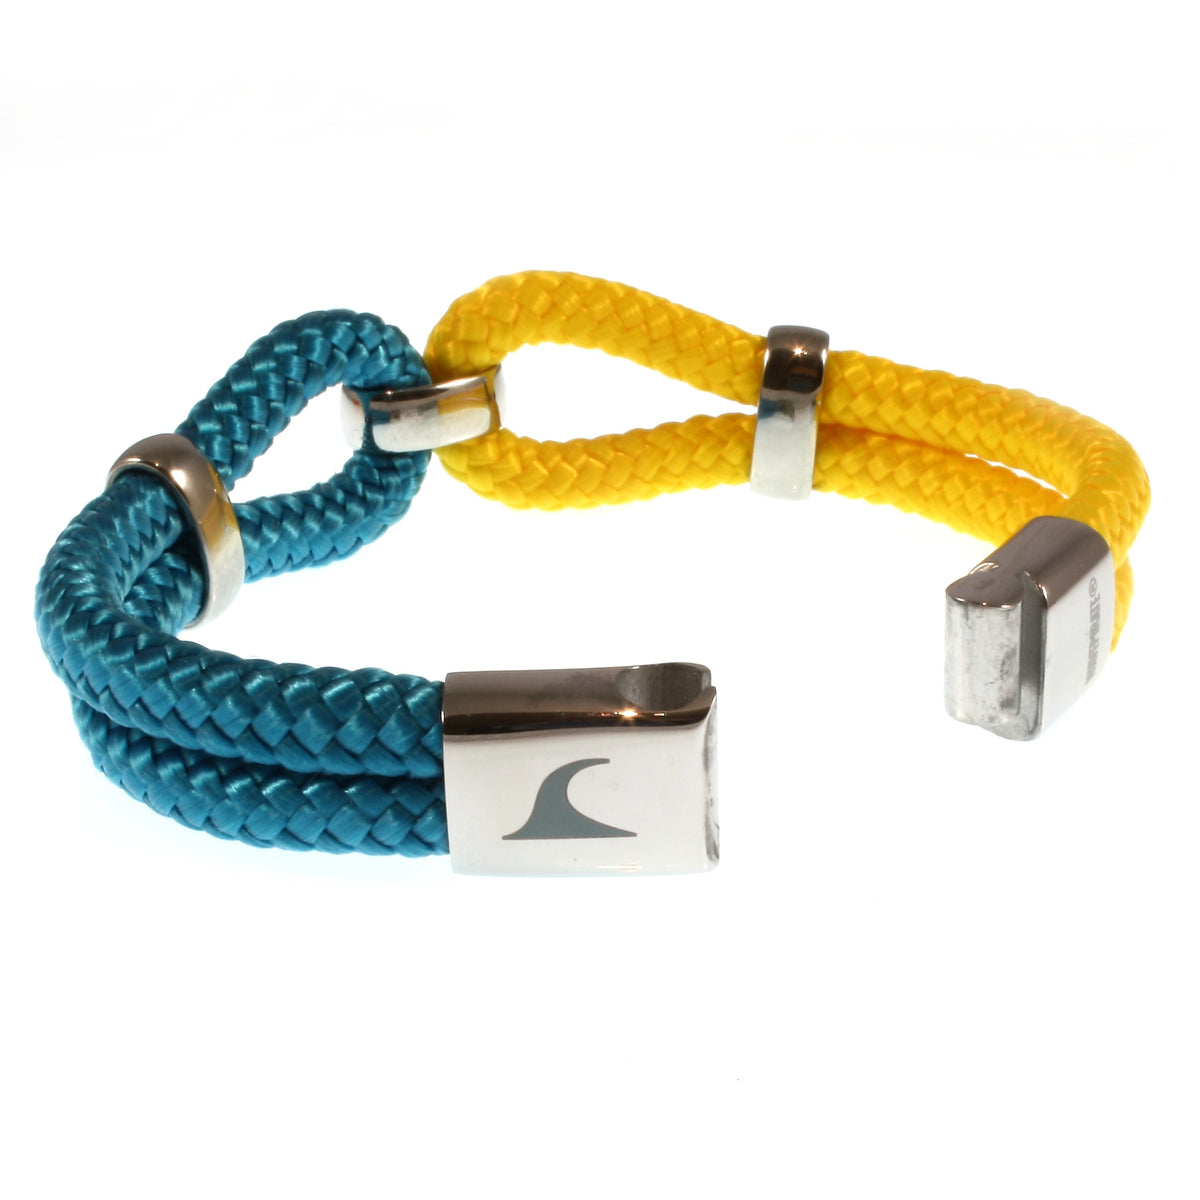 Analyzing image  Damen-Segeltau-armband-roma-blau-gelb-geflochten-Edelstahlverschluss-offen-wavepirate-shop-st